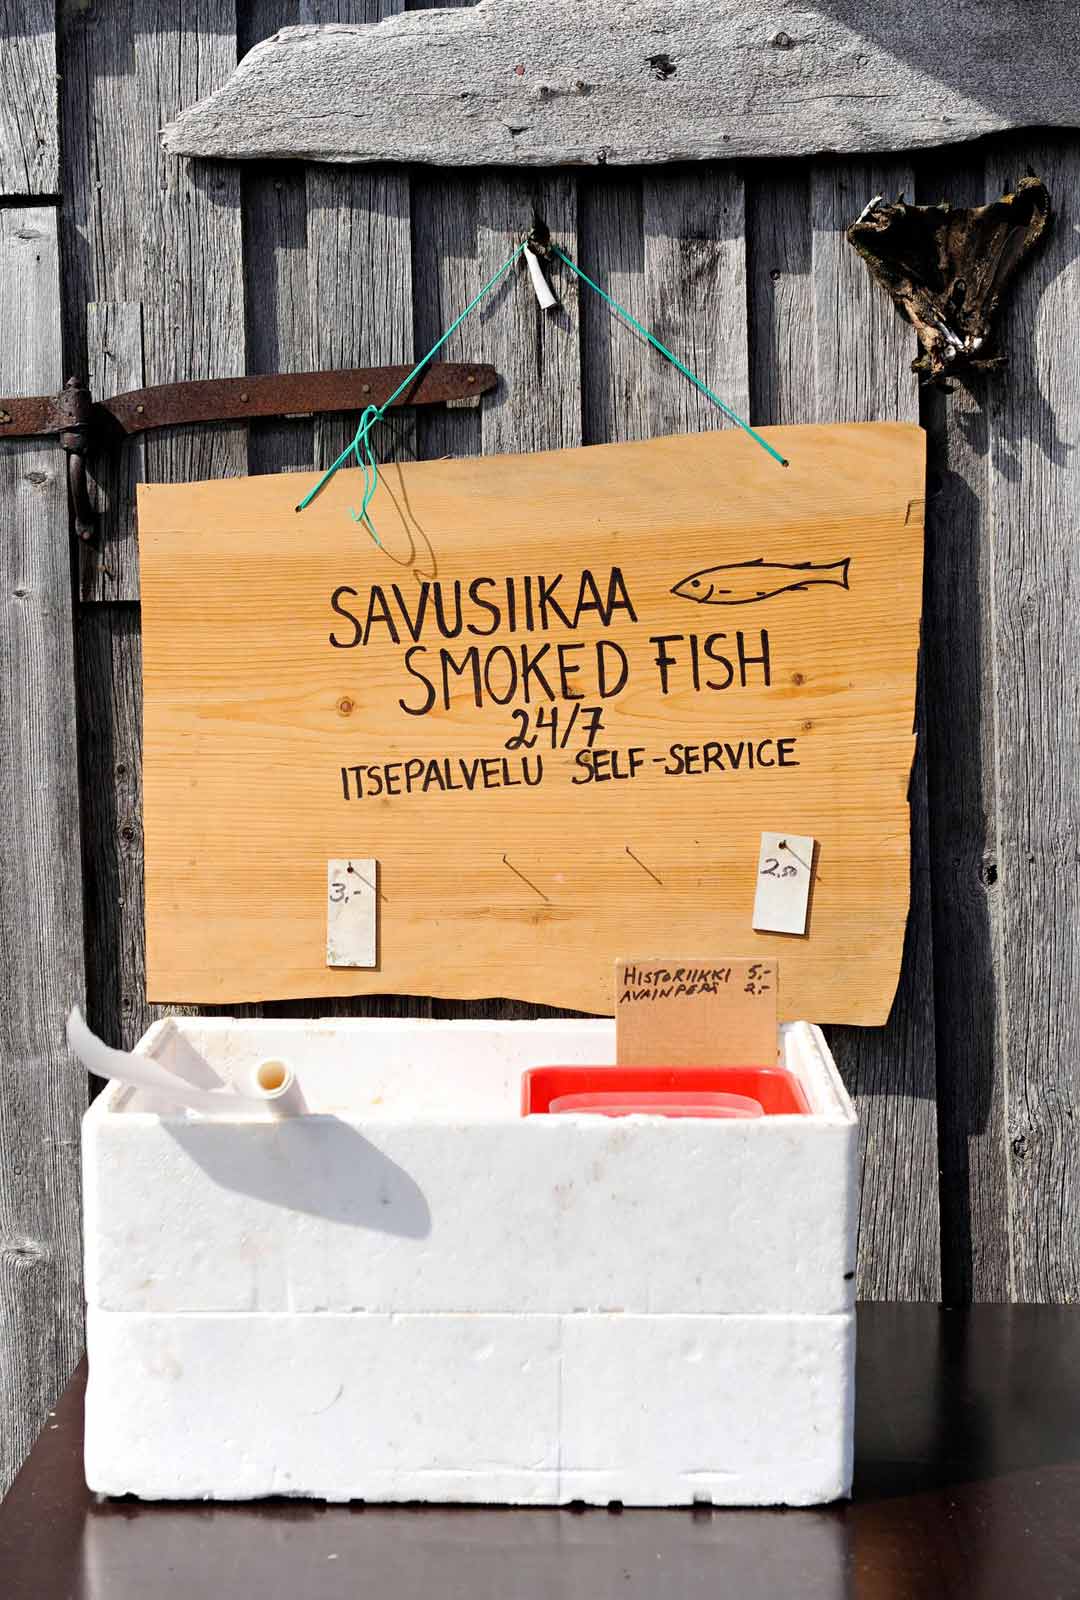 Päiväpurjehduksella vierailevat voivat herkutella kalastaja Pasi Pääkkösen savusiioilla. 